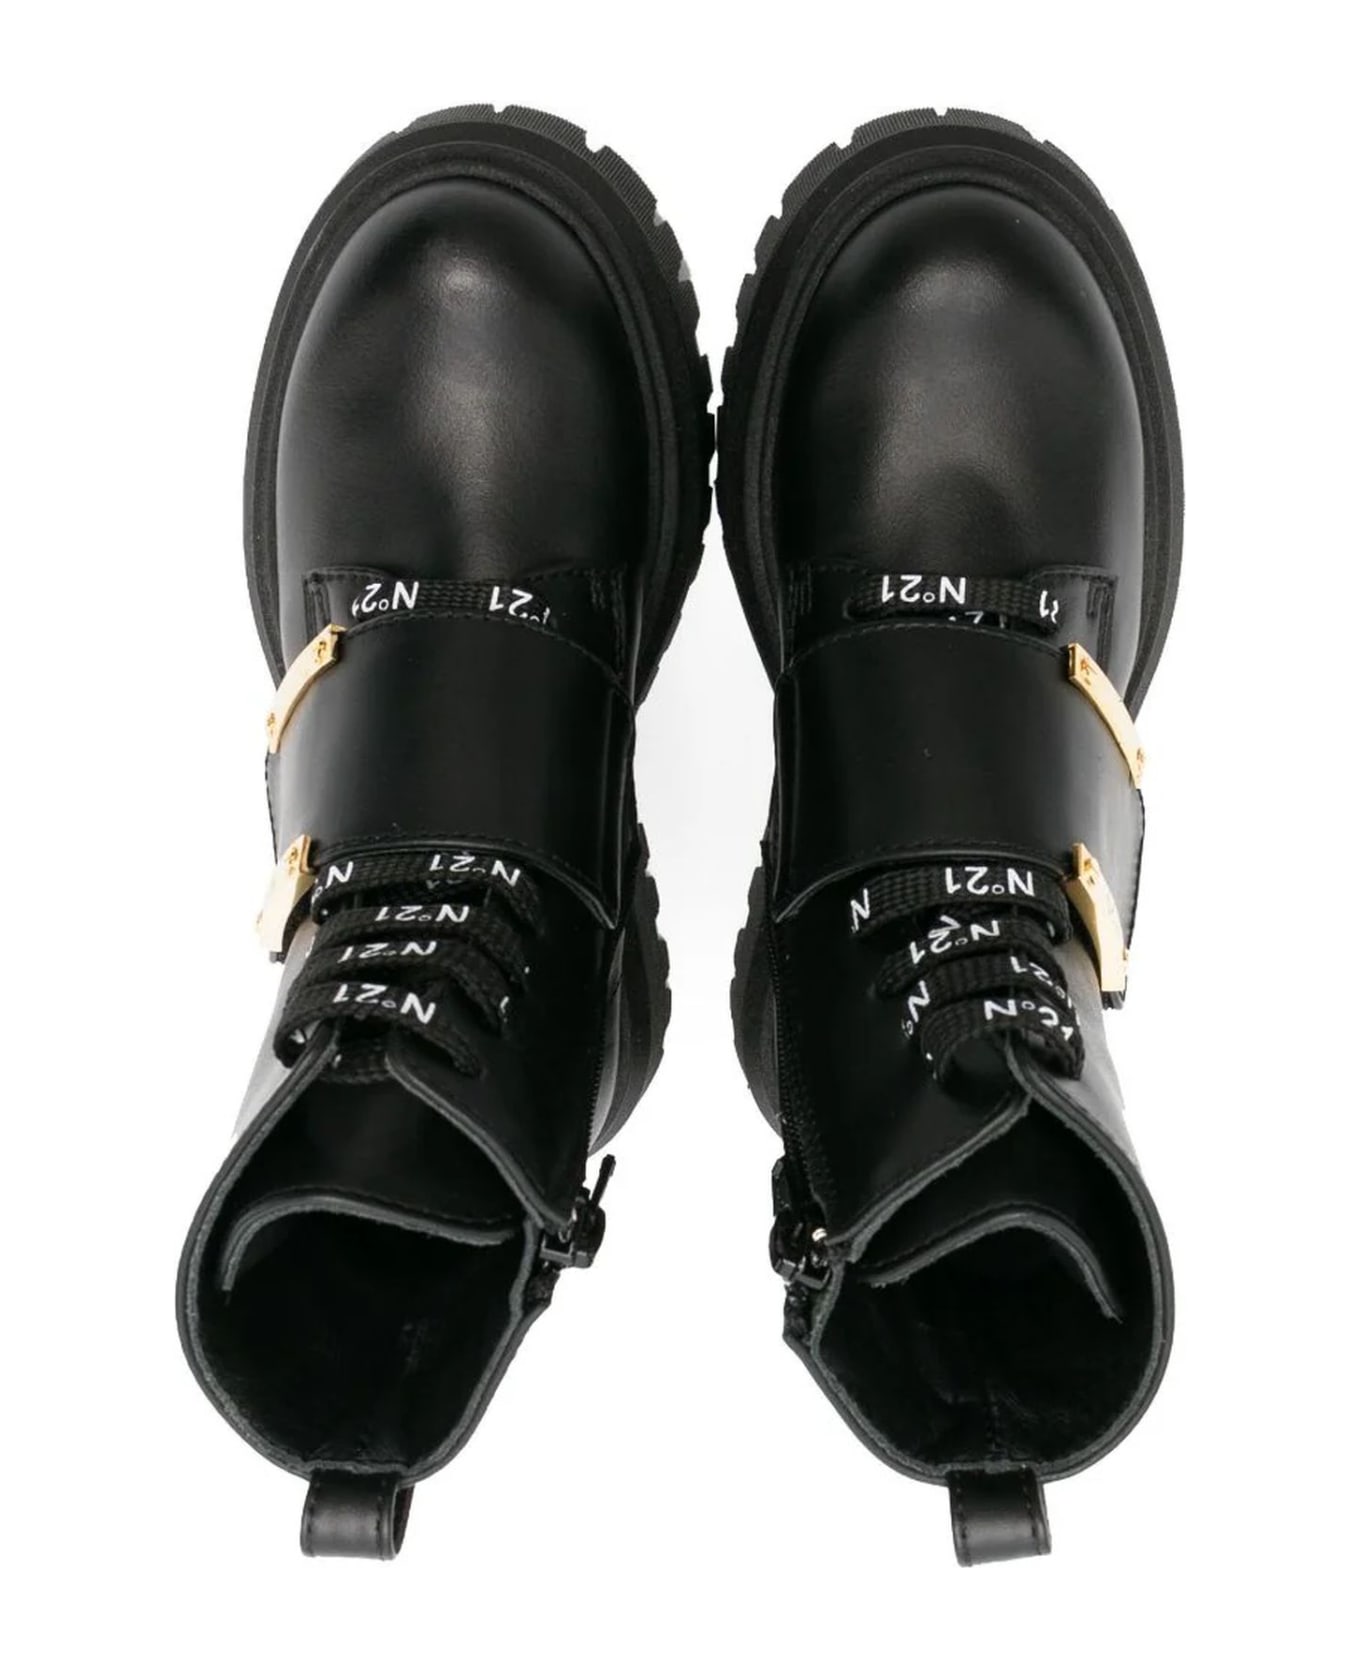 N.21 N°21 Boots Black - Black